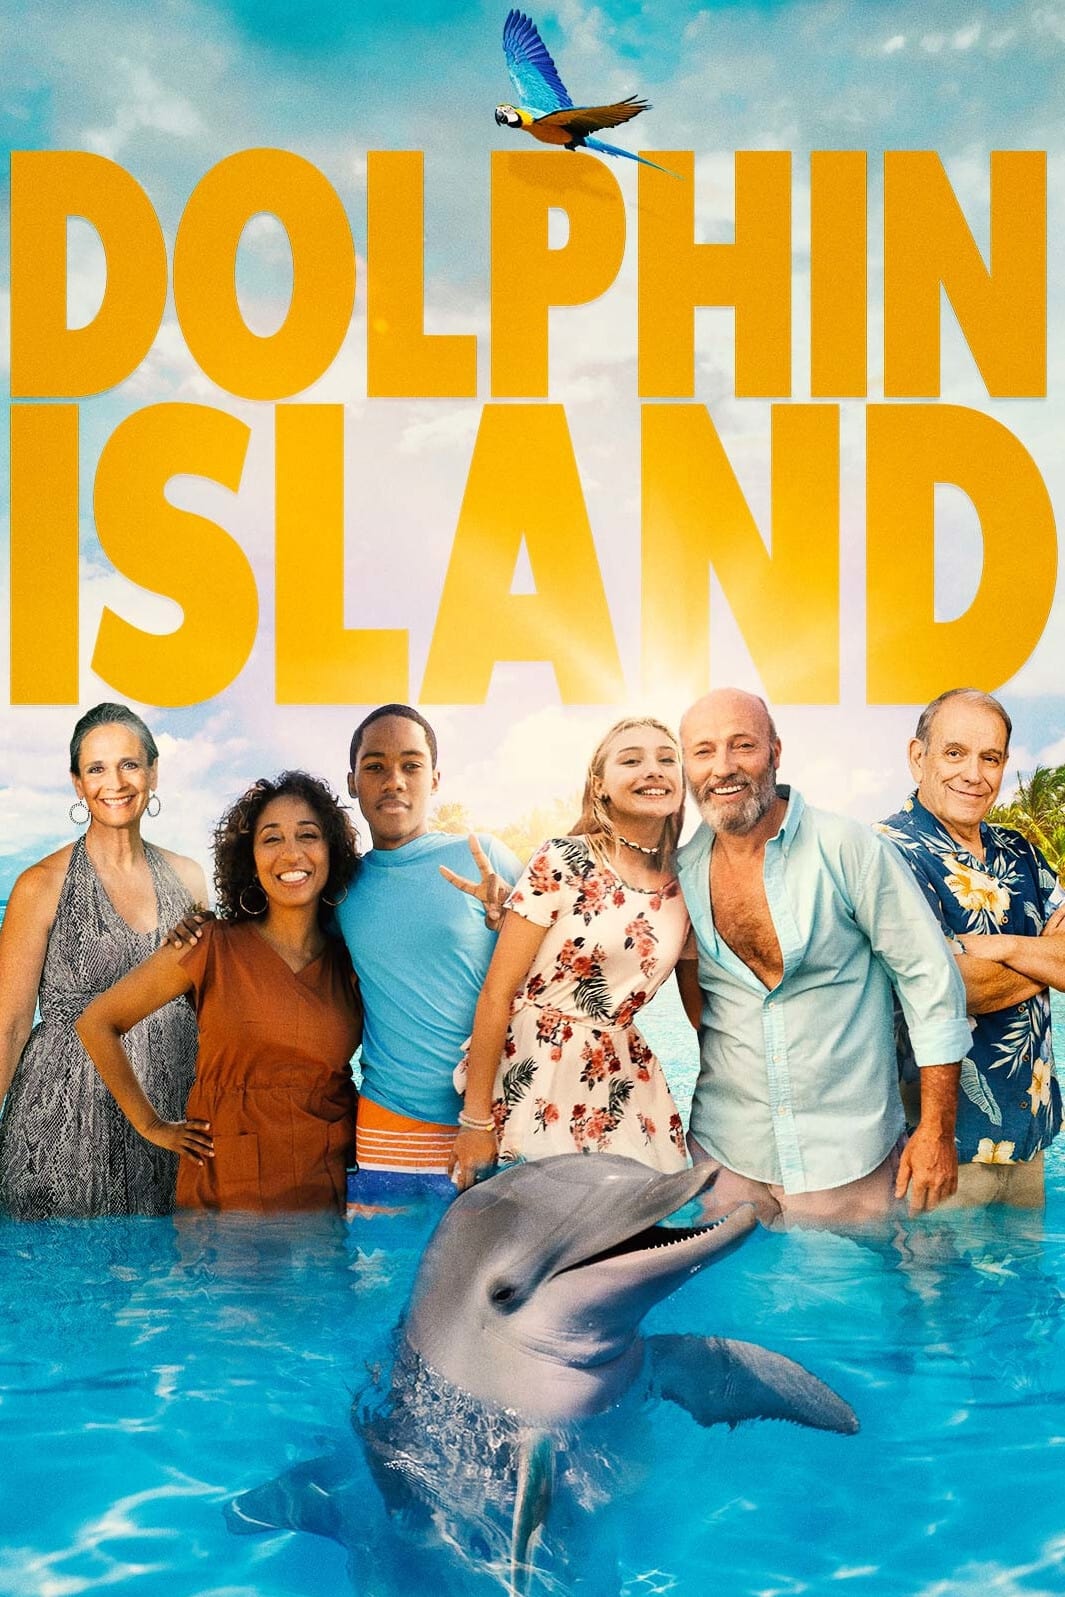 ดูหนังออนไลน์ฟรี Dolphin Island ผจญภัยโลมาเพื่อนรัก